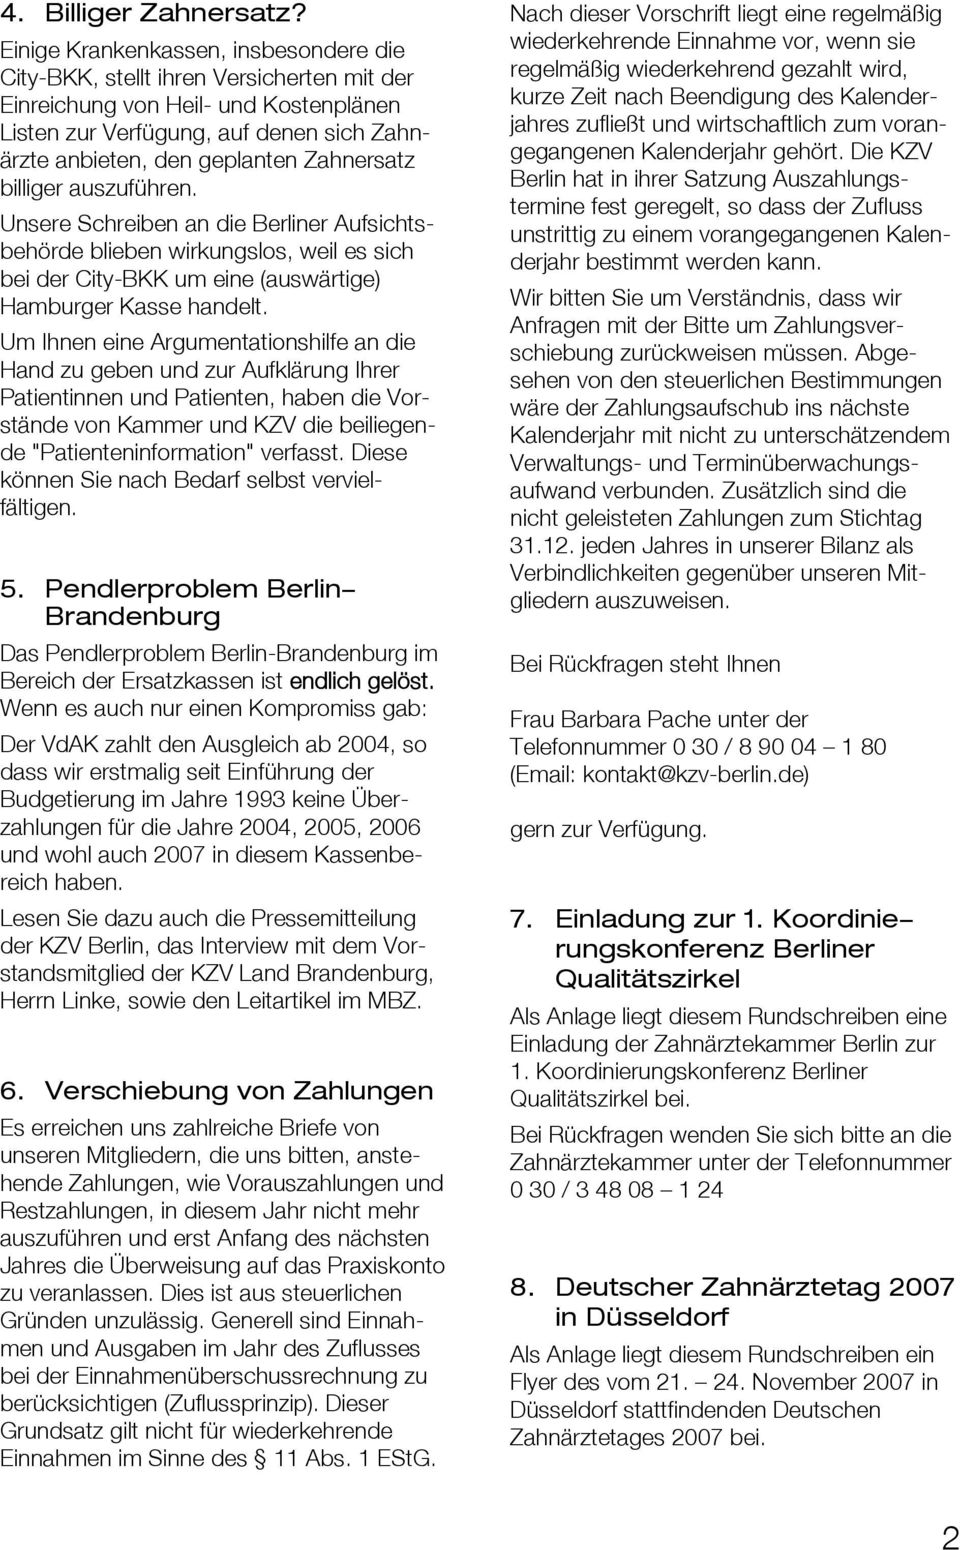 Zahnersatz billiger auszuführen. Unsere Schreiben an die Berliner Aufsichtsbehörde blieben wirkungslos, weil es sich bei der City-BKK um eine (auswärtige) Hamburger Kasse handelt.